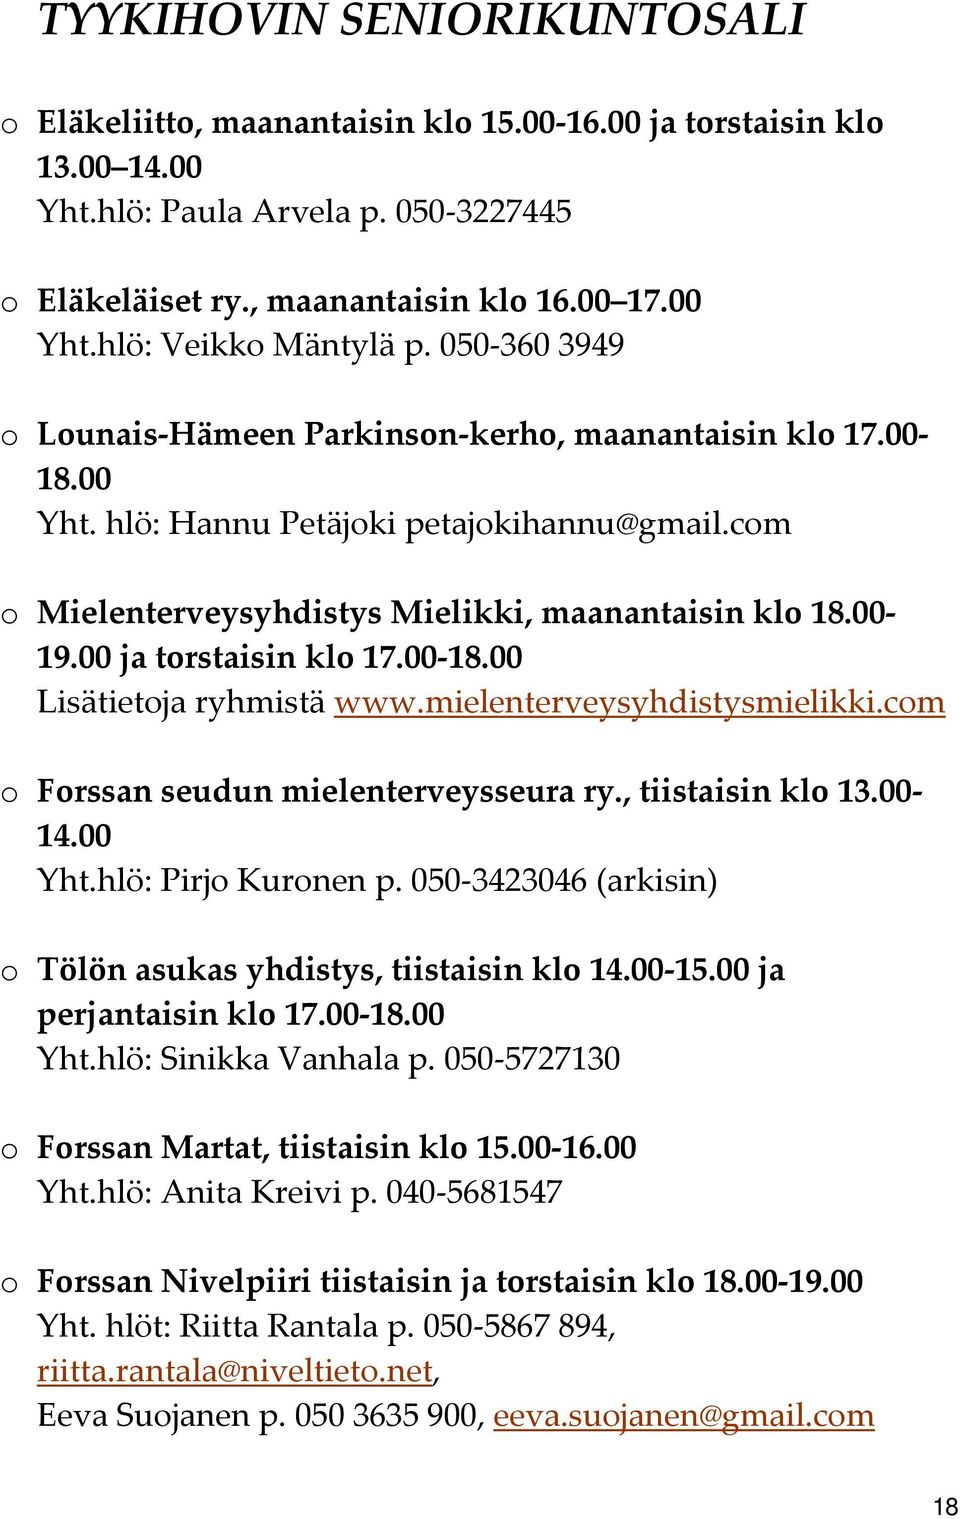 00 ja torstaisin klo 17.00 18.00 Lisätietoja ryhmistä www.mielenterveysyhdistysmielikki.com o Forssan seudun mielenterveysseura ry., tiistaisin klo 13.00 14.00 Yht.hlö: Pirjo Kuronen p.